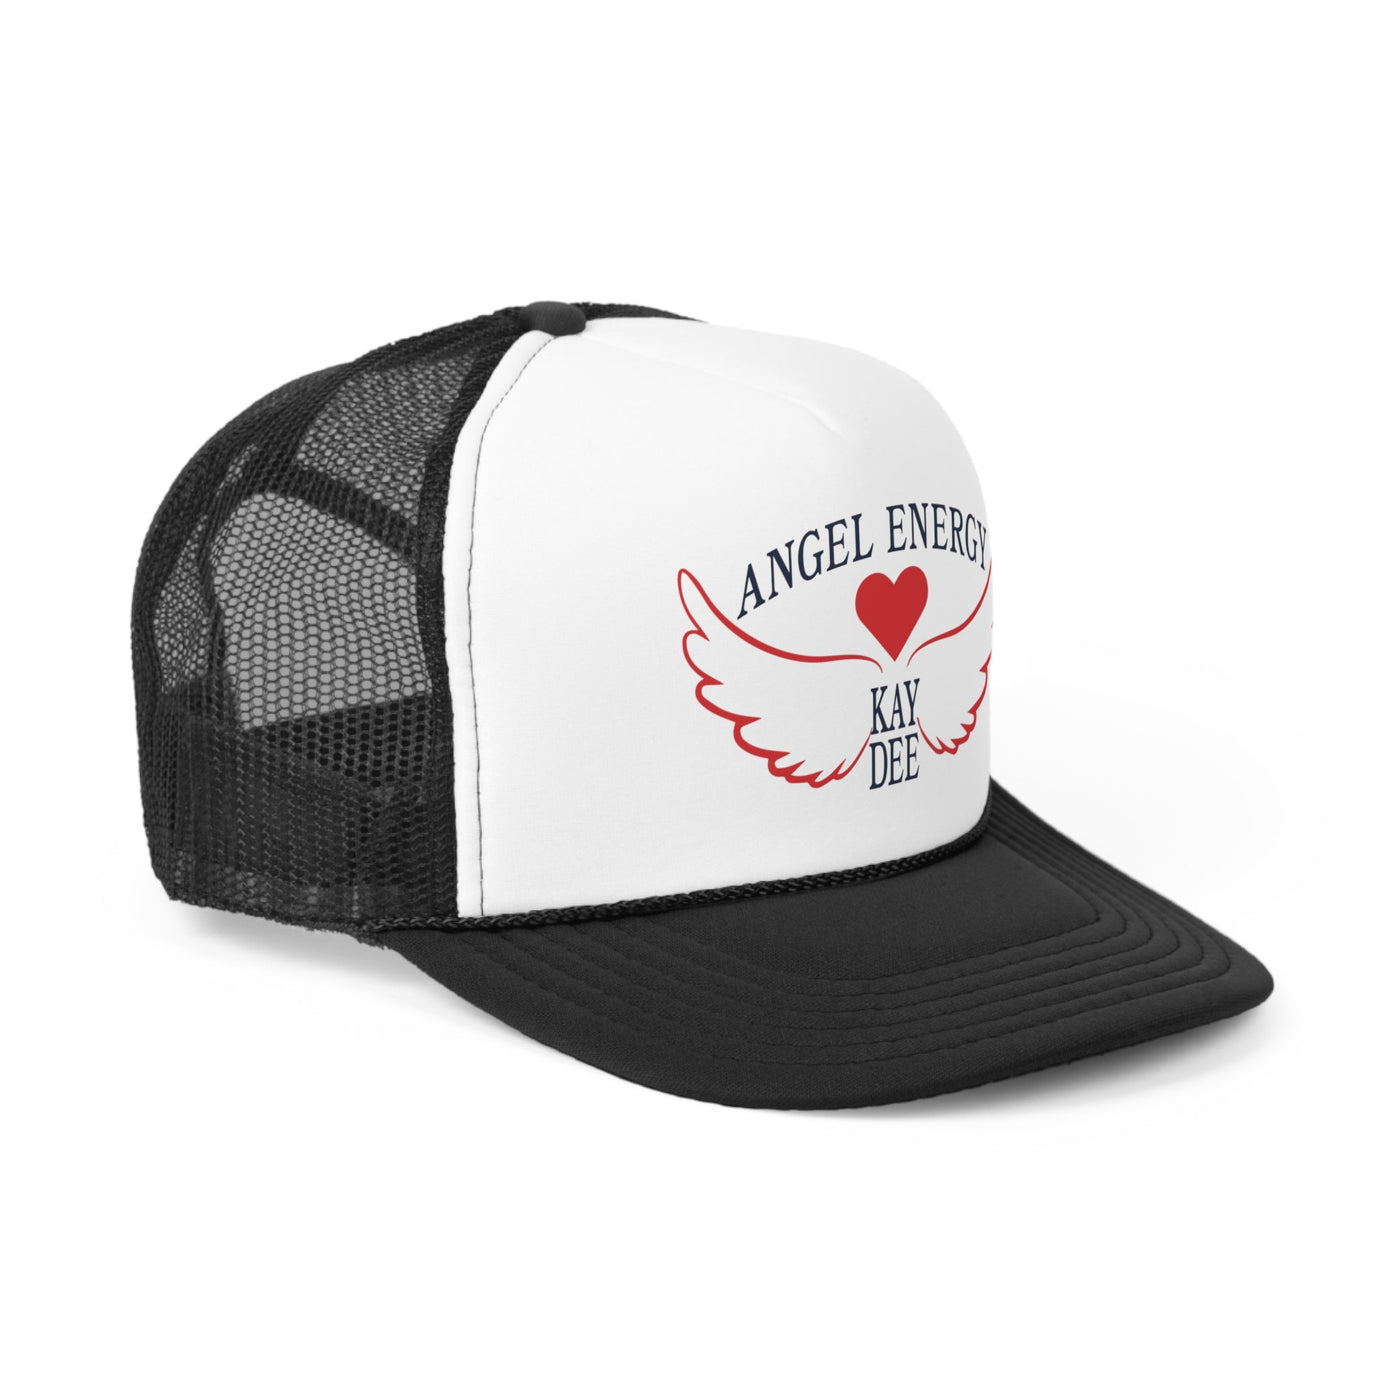 Kappa Delta Angel Energy Foam Trucker Hat